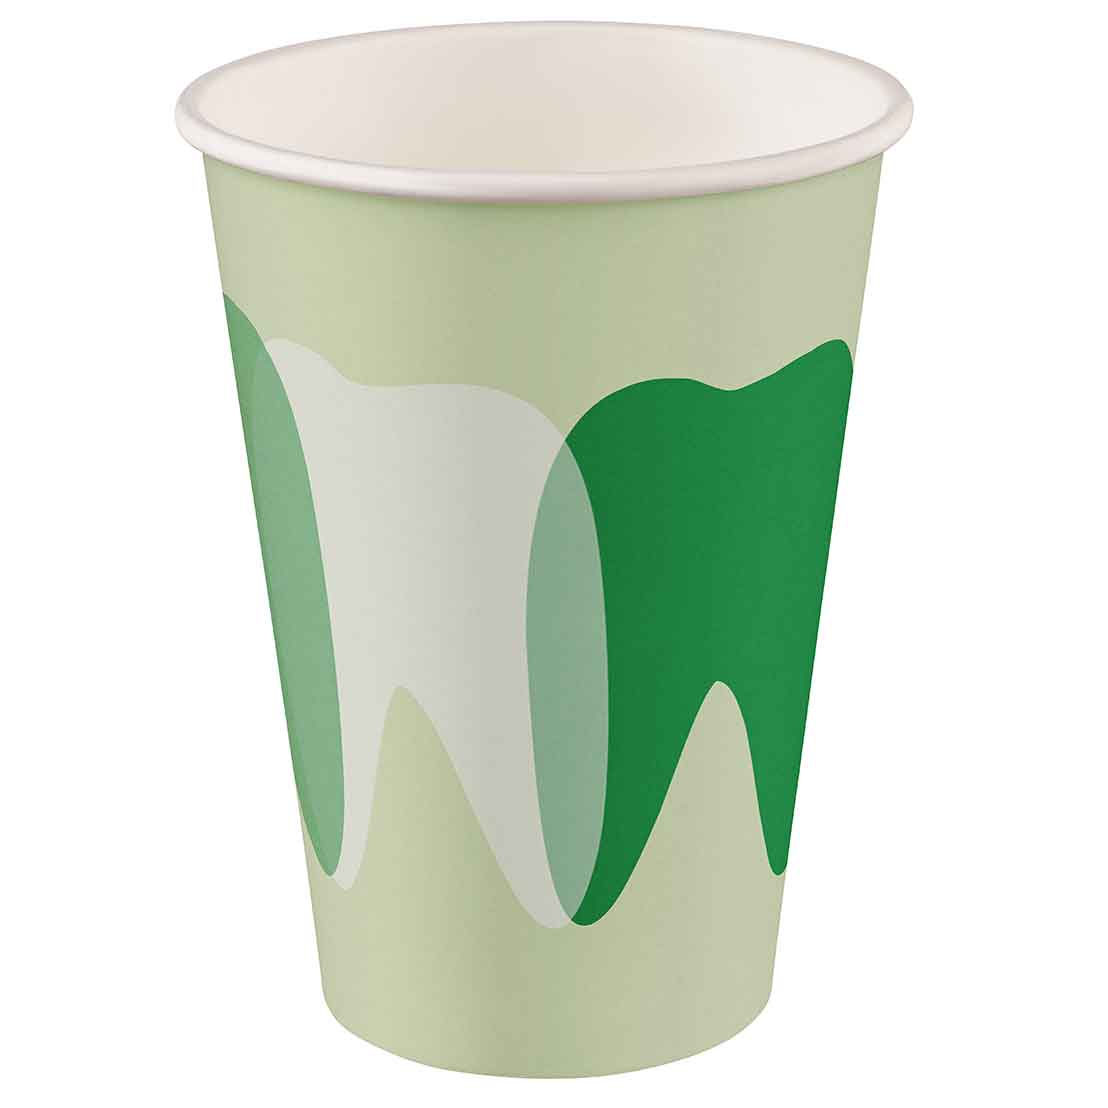 Mundspülbecher Hartpapier, recyclebar, Zahndesign grün, 180ml